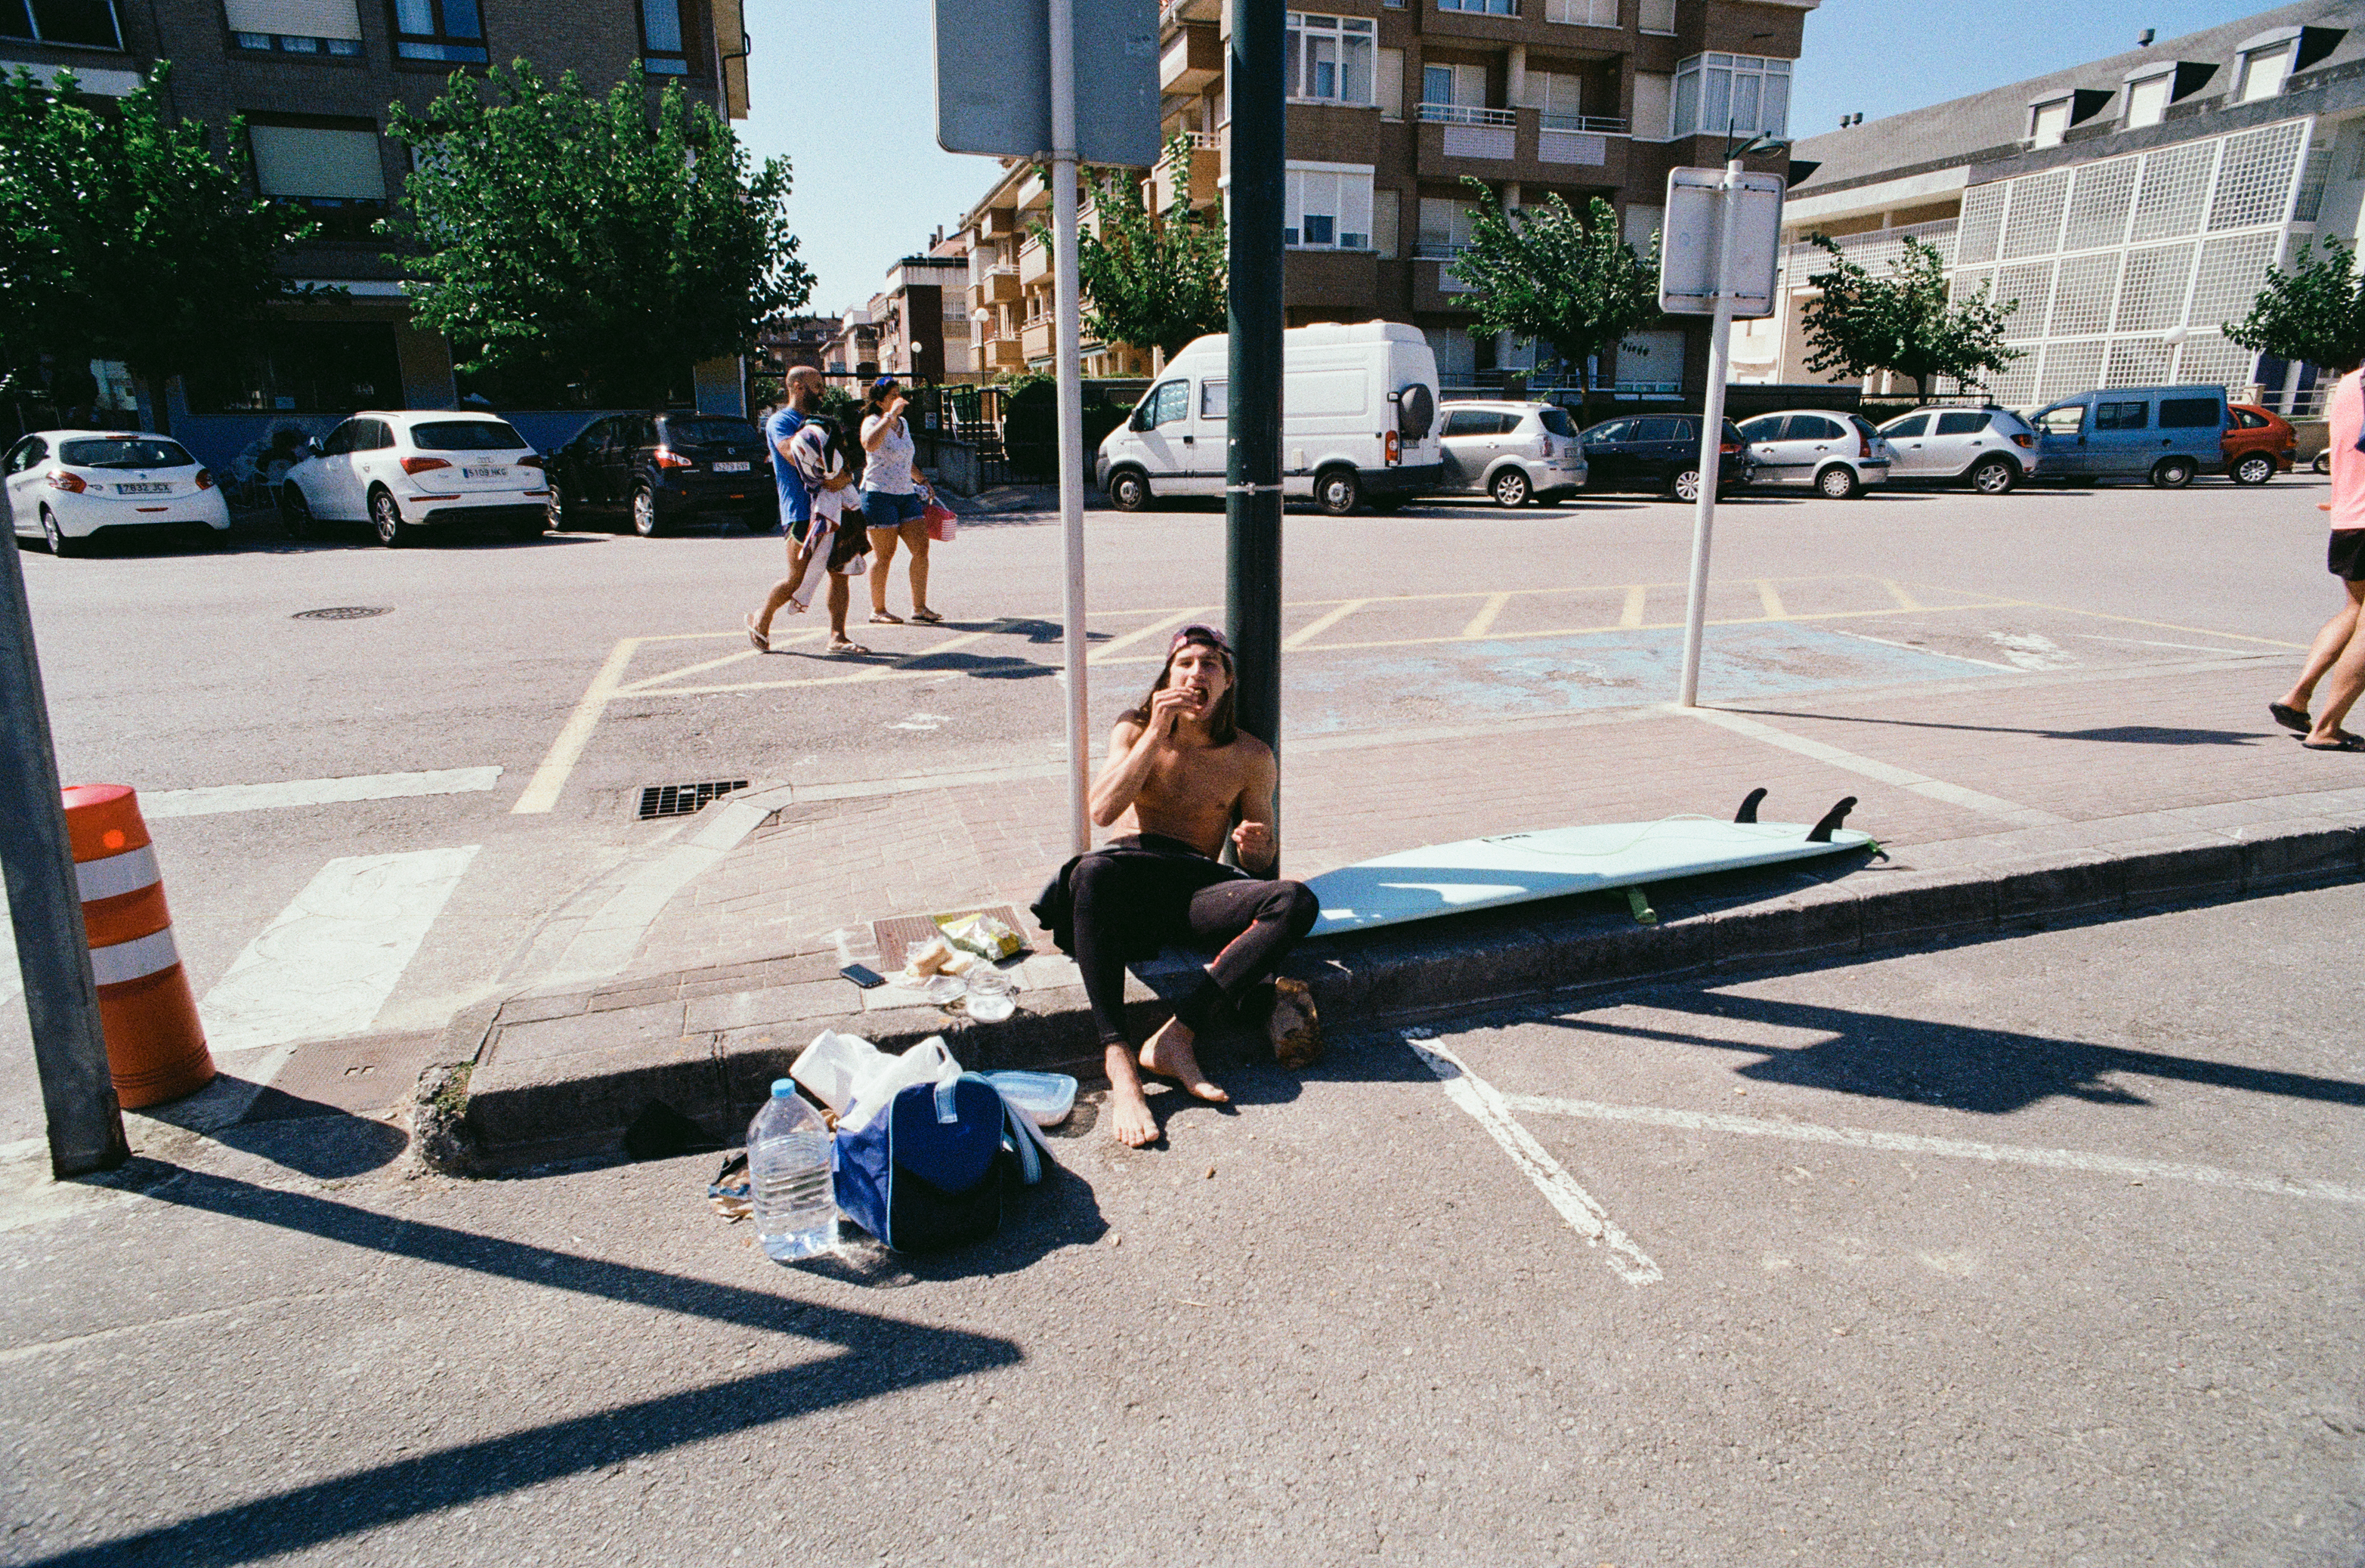 Surfing trip to Santander, Spain. (Leica R9)